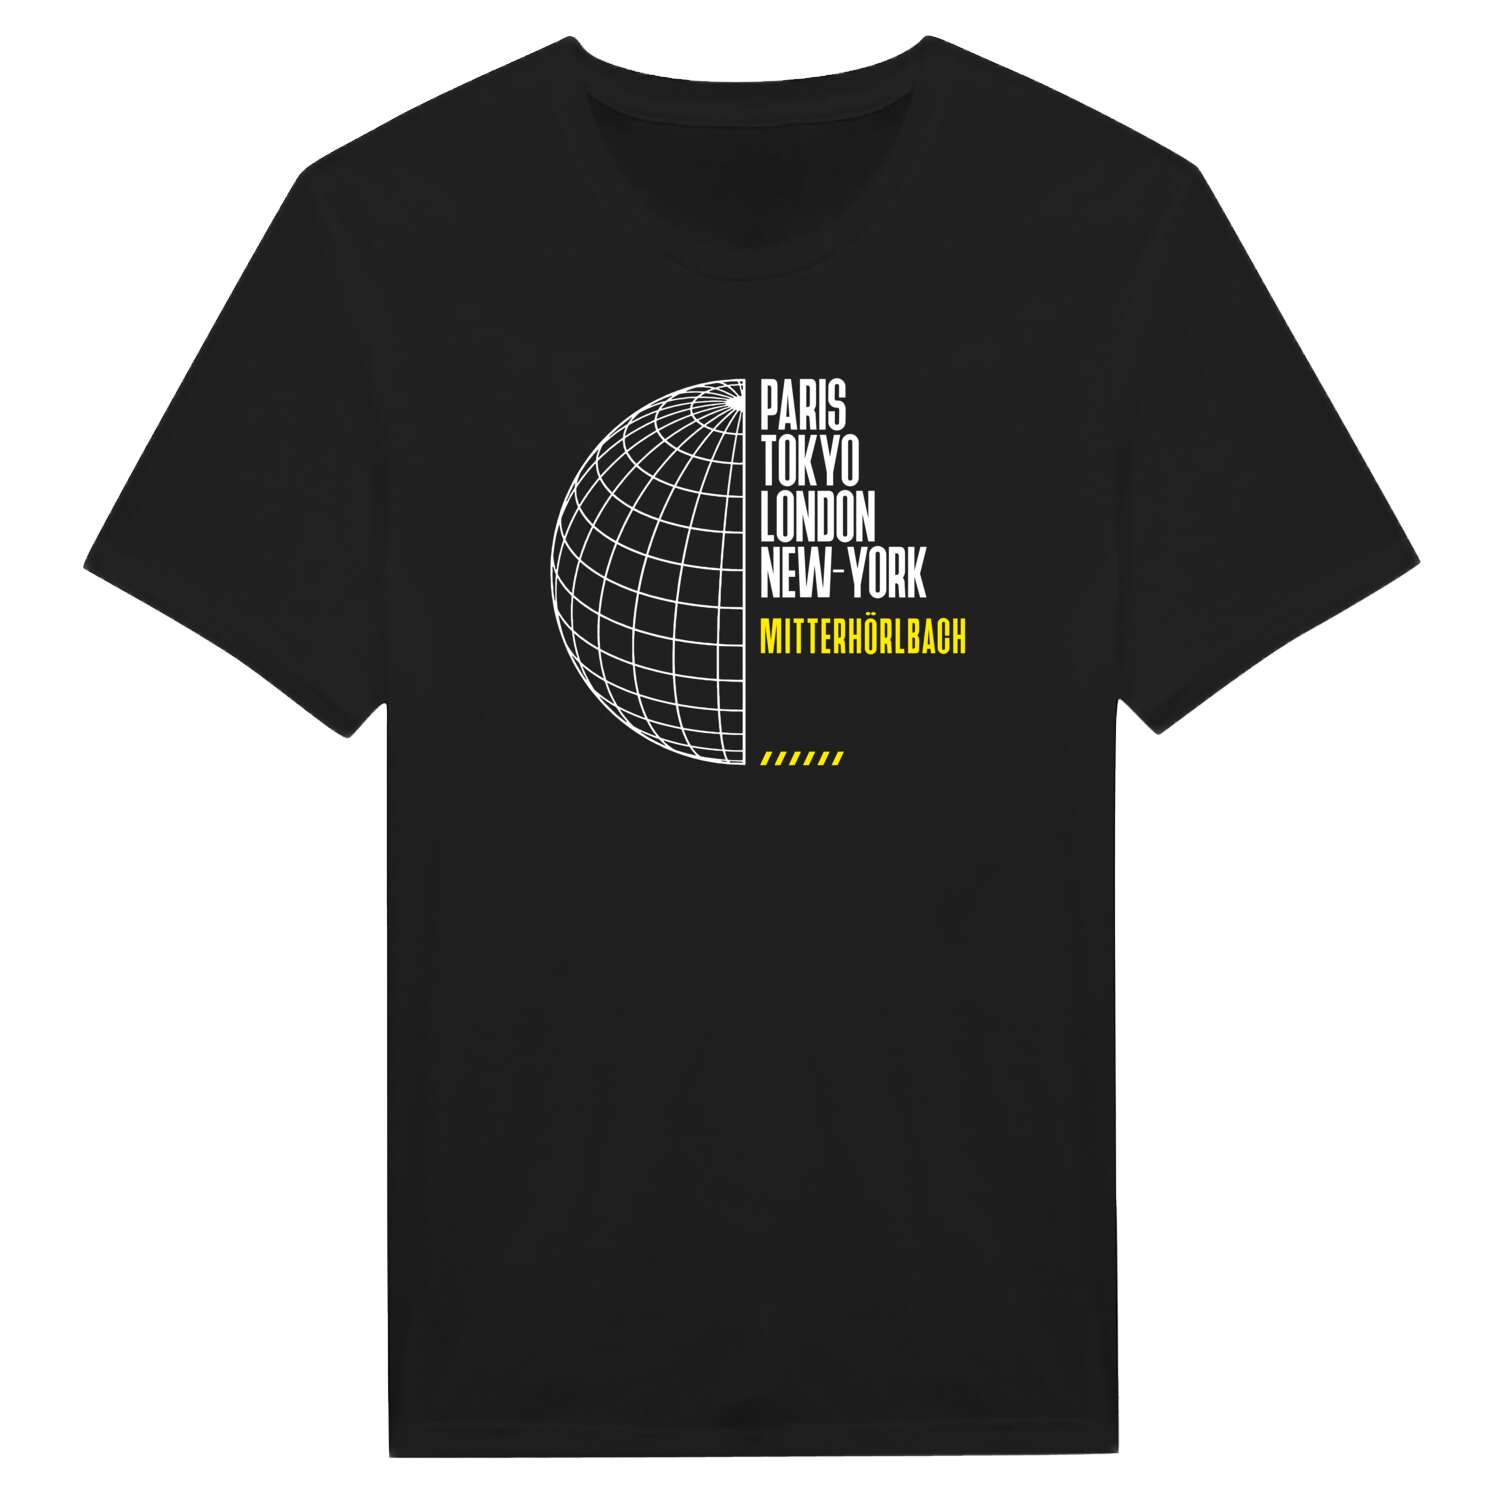 Mitterhörlbach T-Shirt »Paris Tokyo London«